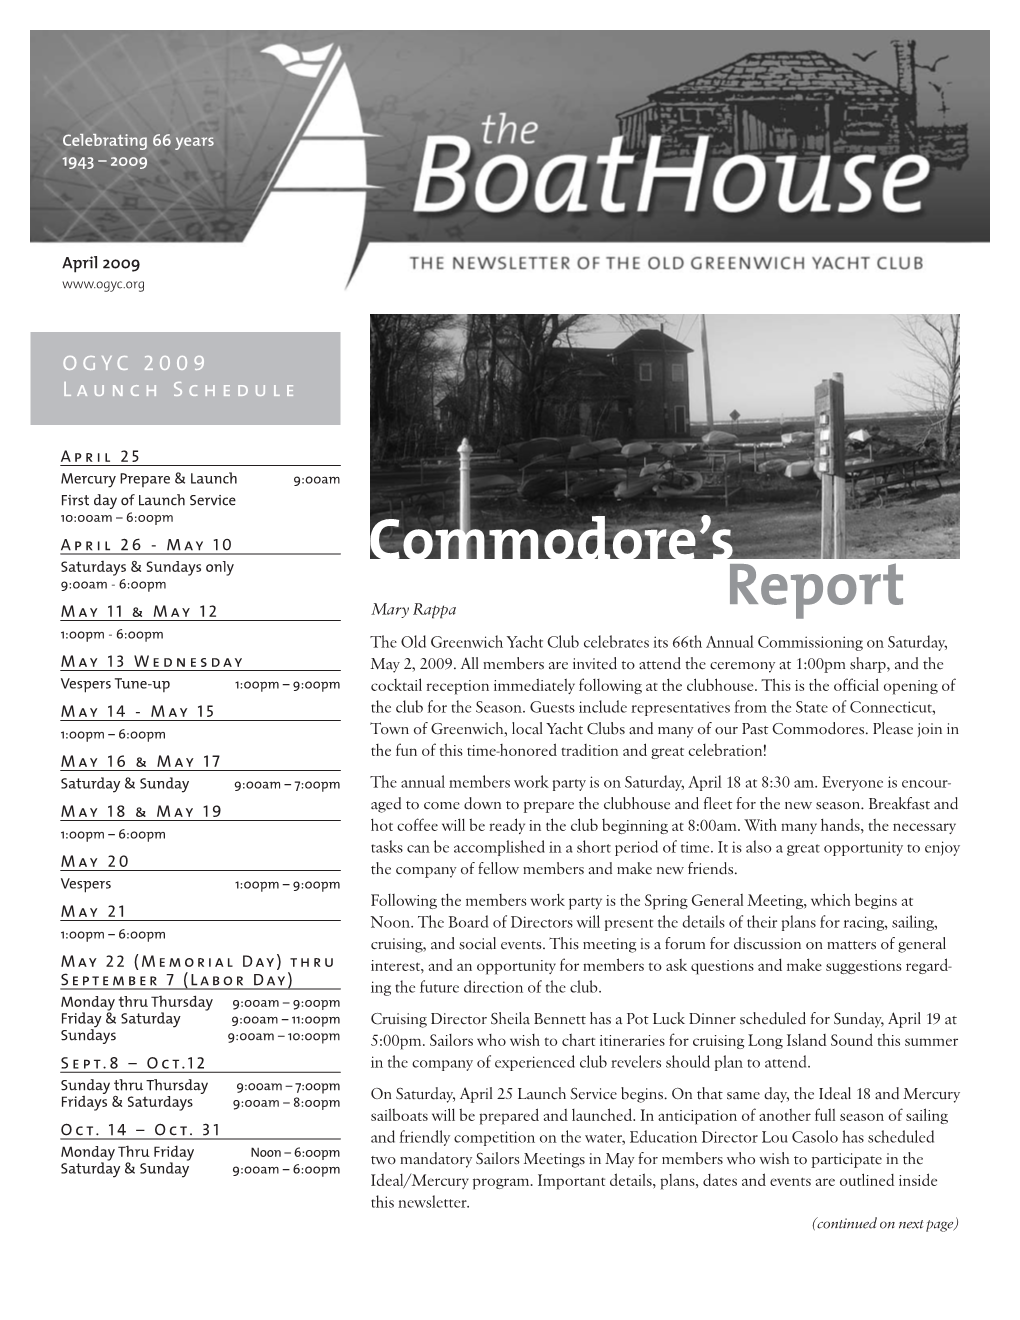 Commodore's Report